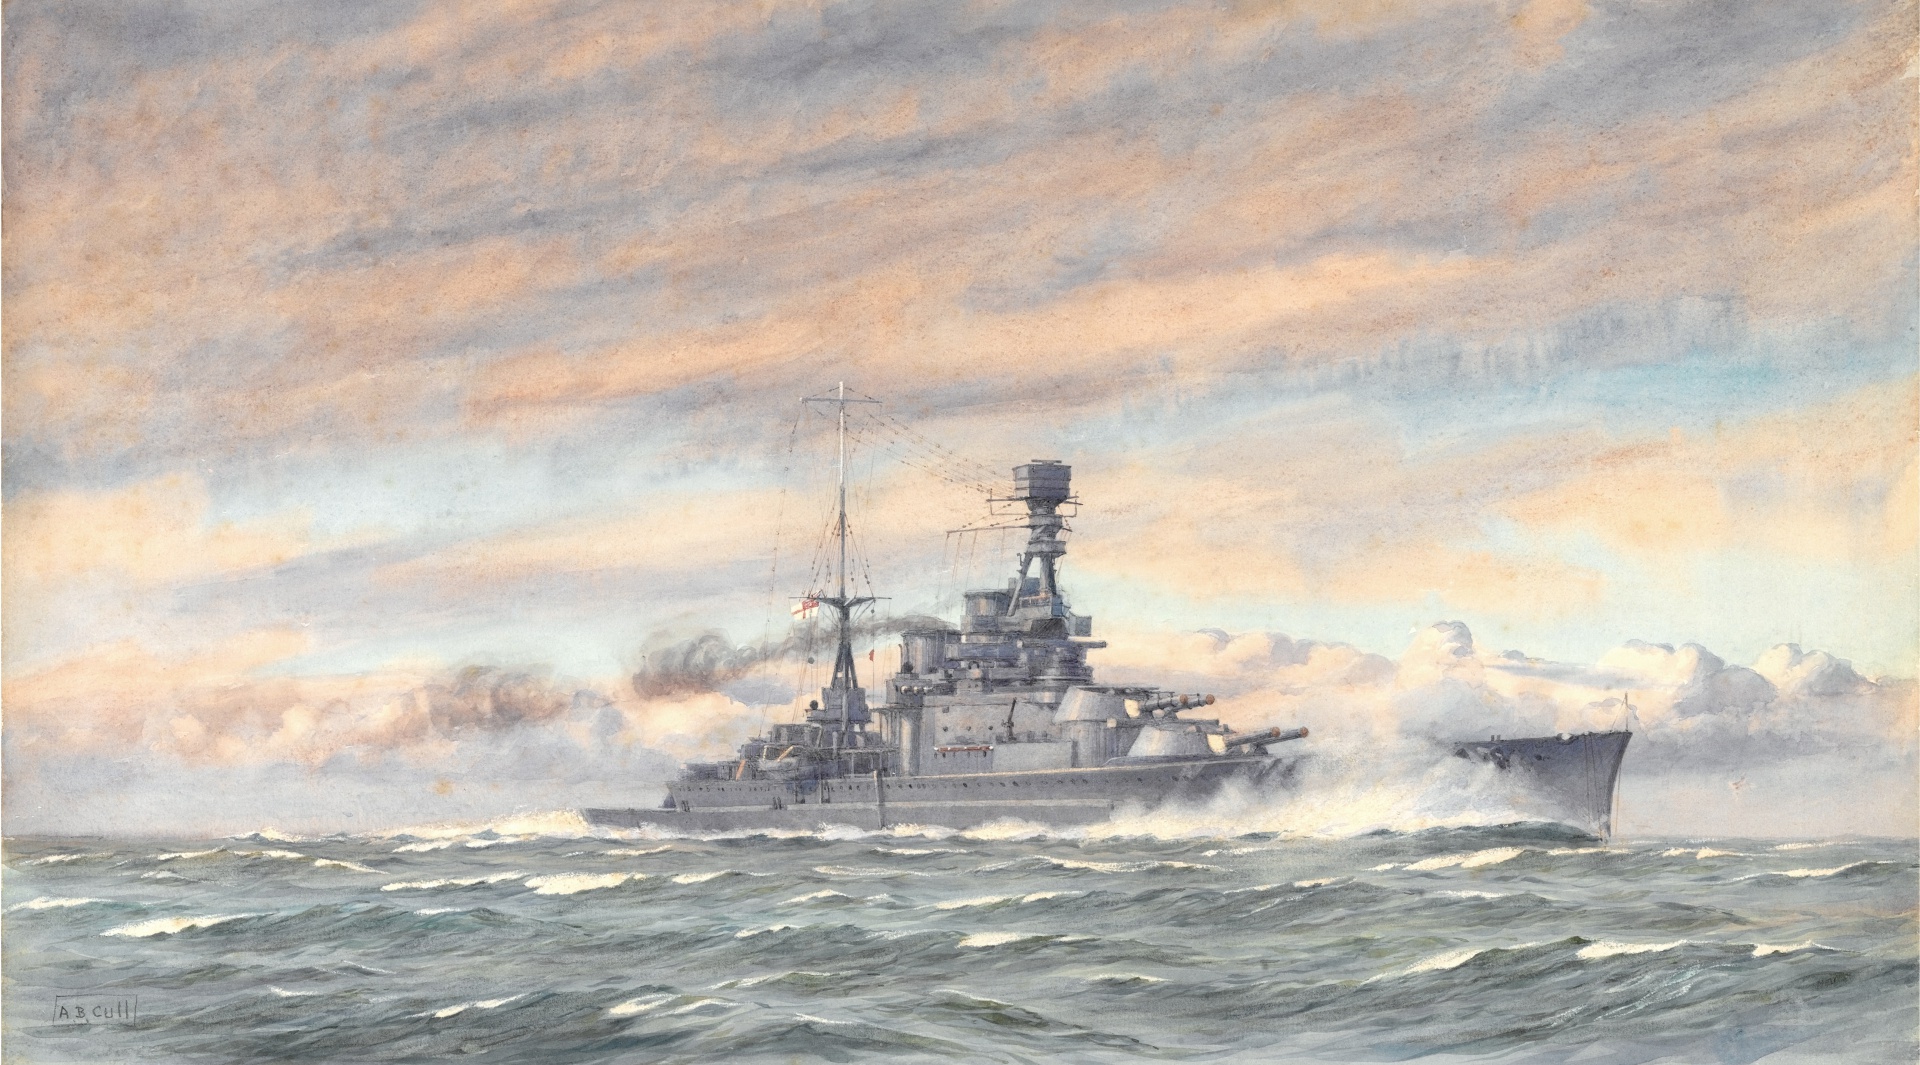 HMS REPULSE